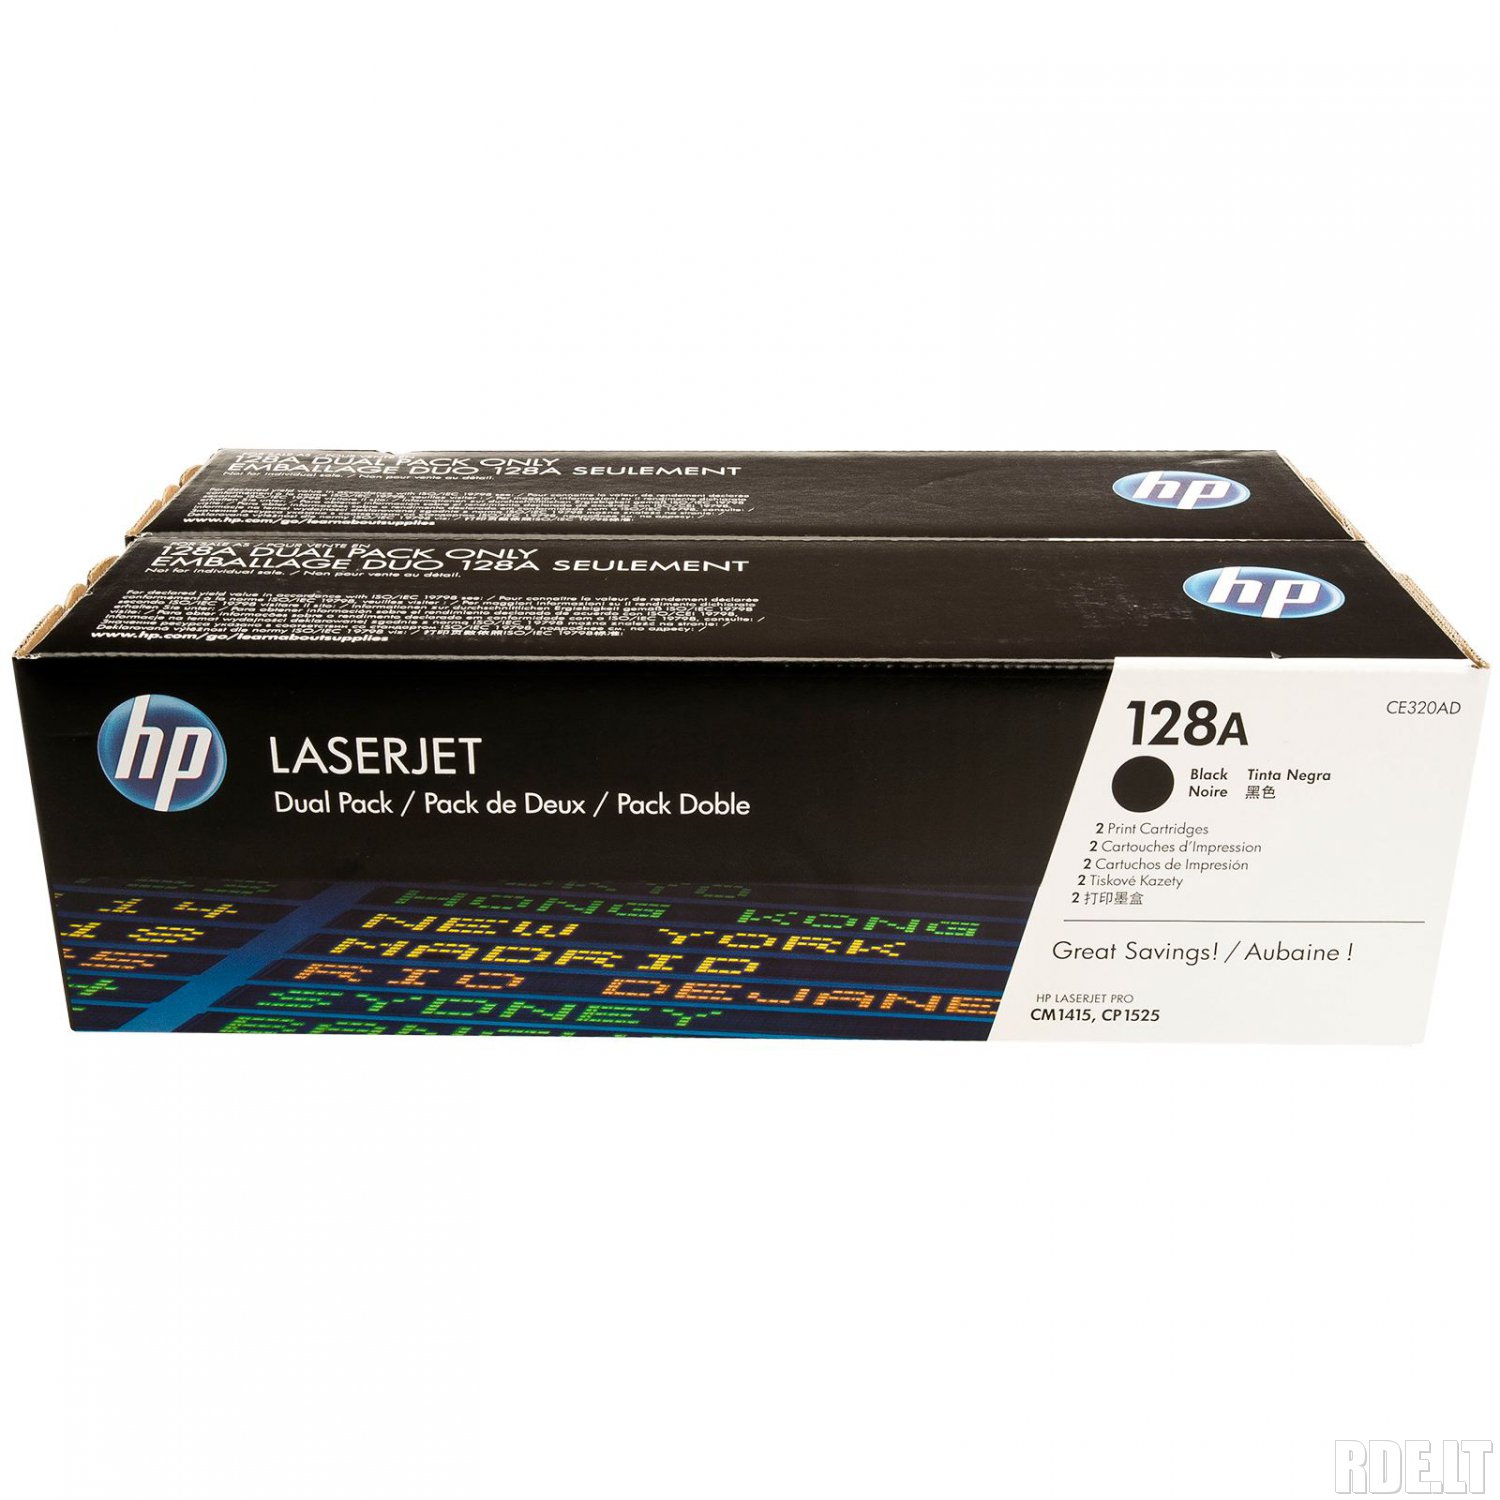 Комплект картриджей HP CE320AD 128A оригинальный чёрный для принтеров LASERJET PRO CM1415 | LASERJET PRO CP1525